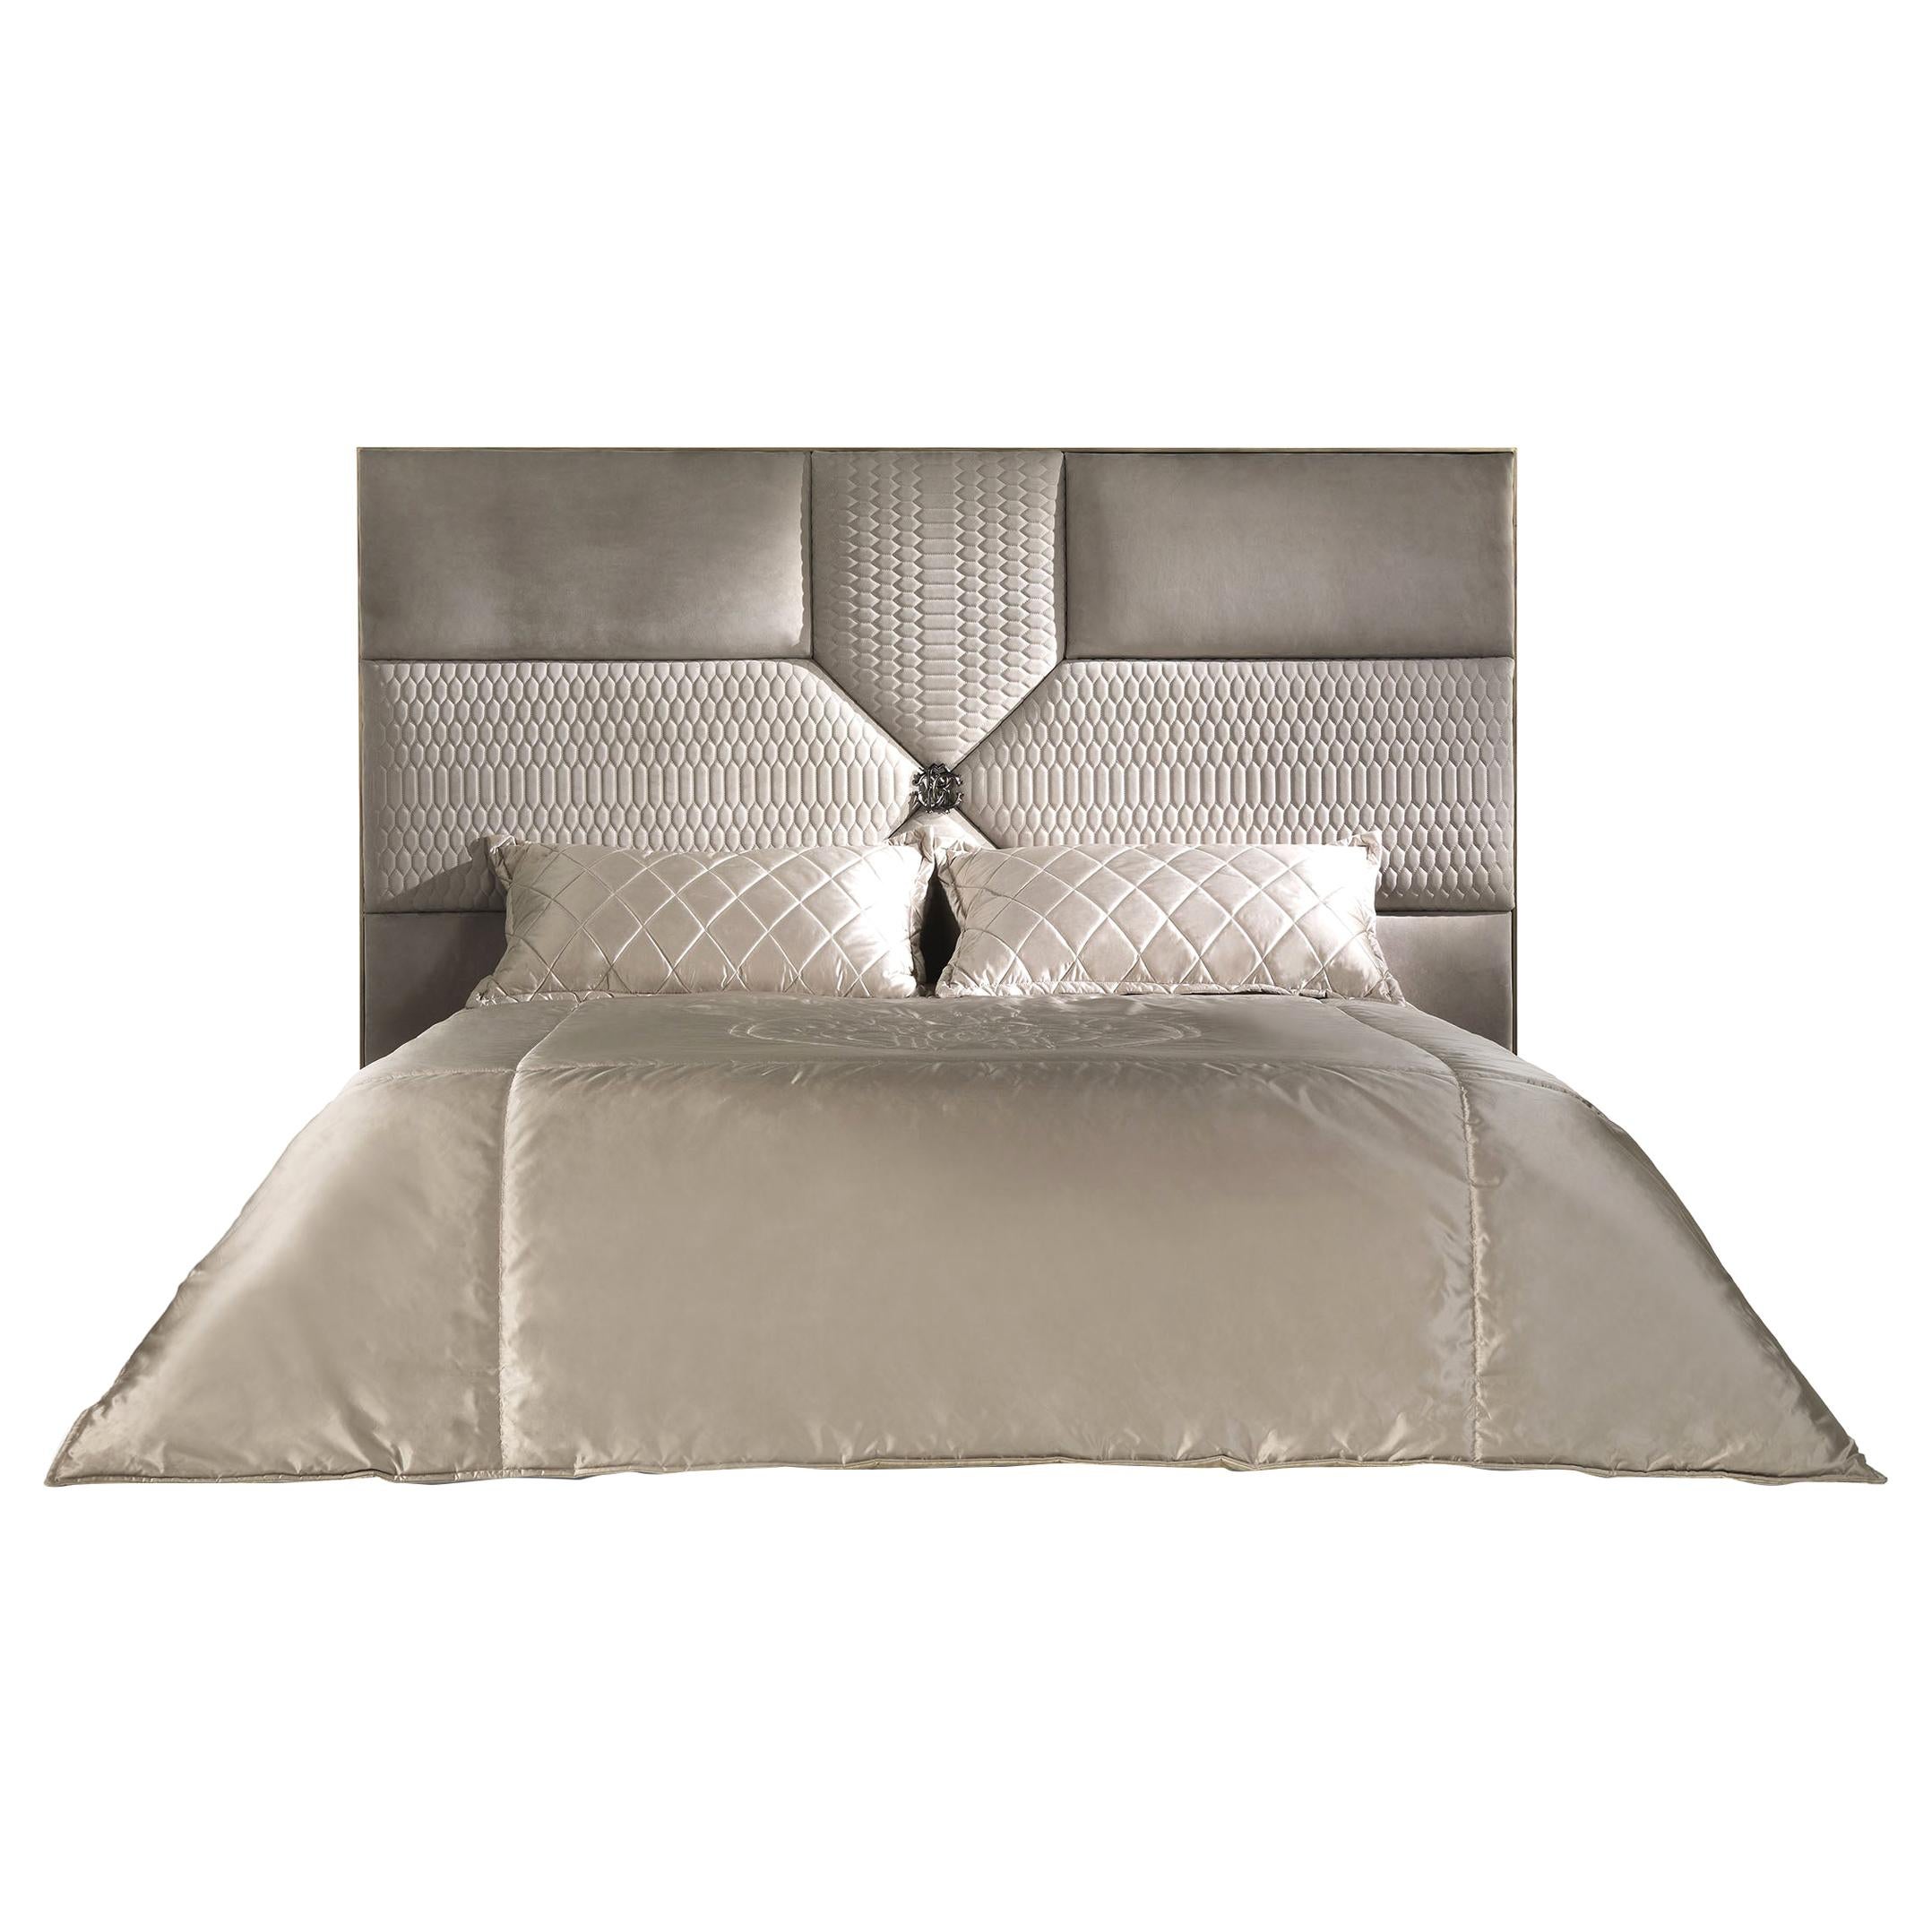 Springs-Bett aus Leder des 21. Jahrhunderts von Roberto Cavalli Home Interiors